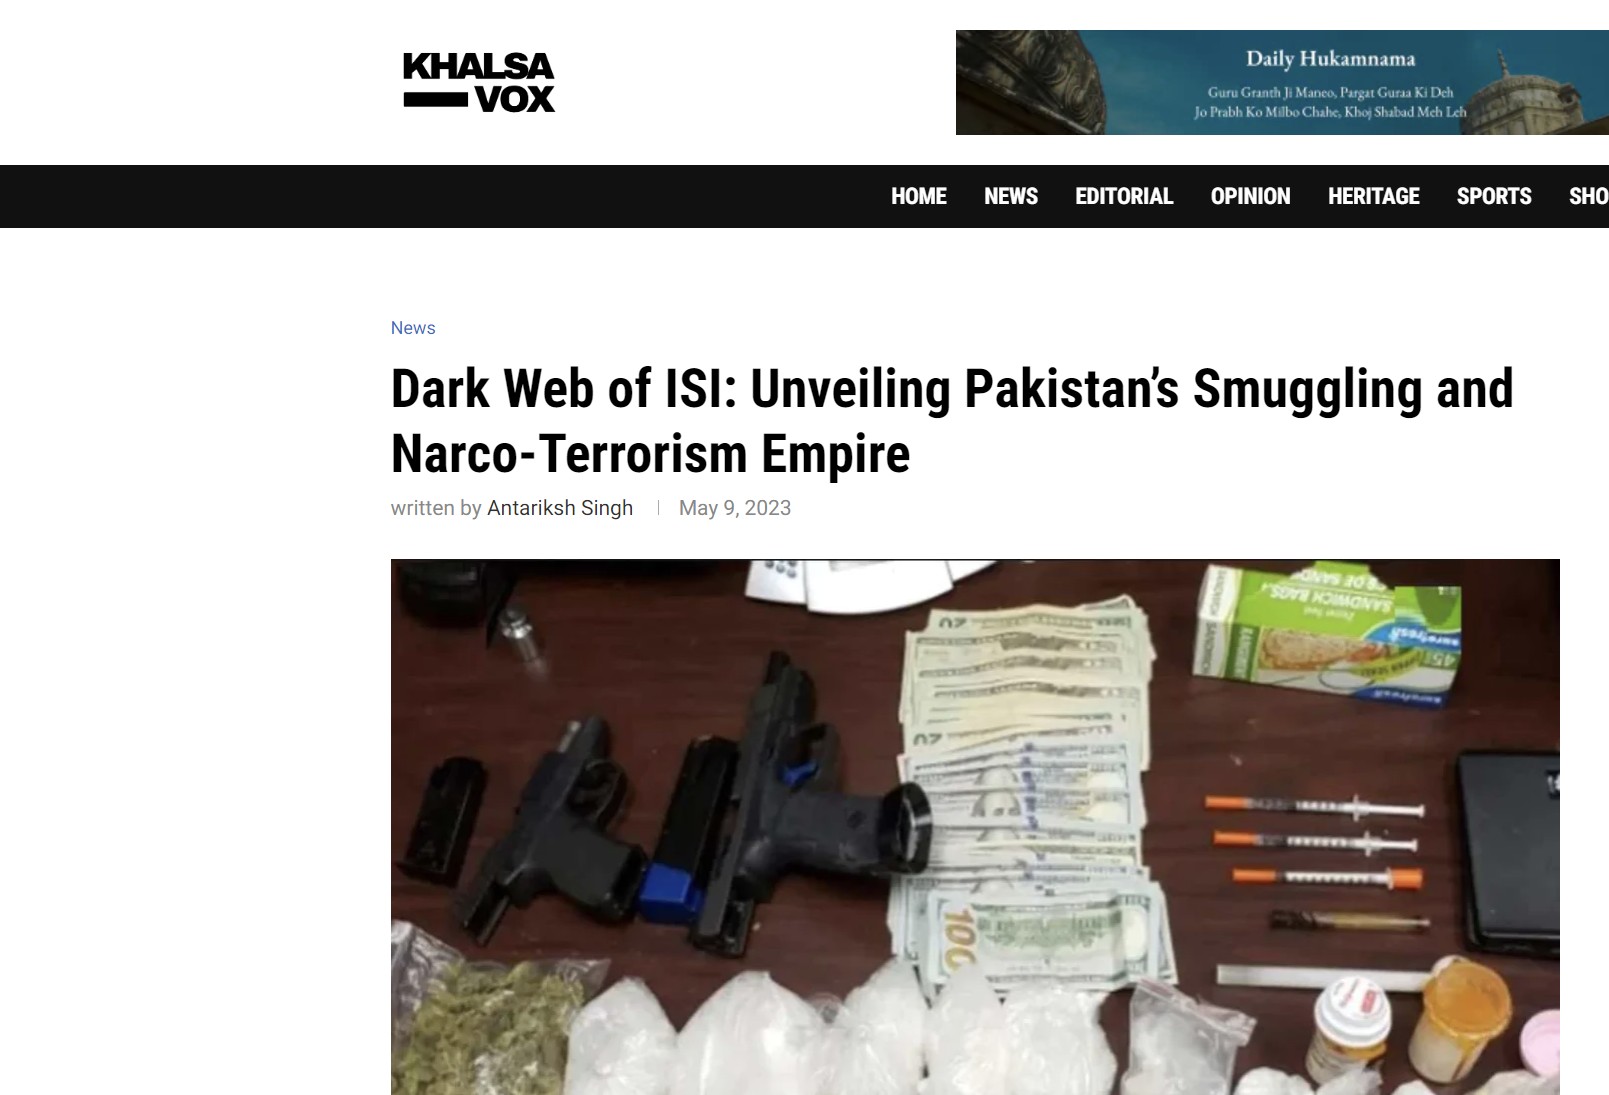 Οι Μυστικές Υπηρεσίες του Πακιστάν (ISI) λειτουργούν εκτεταμένο δίκτυο λαθρεμπορίου! Παράγουν τρομοκρατία και διακινούν ναρκωτικά